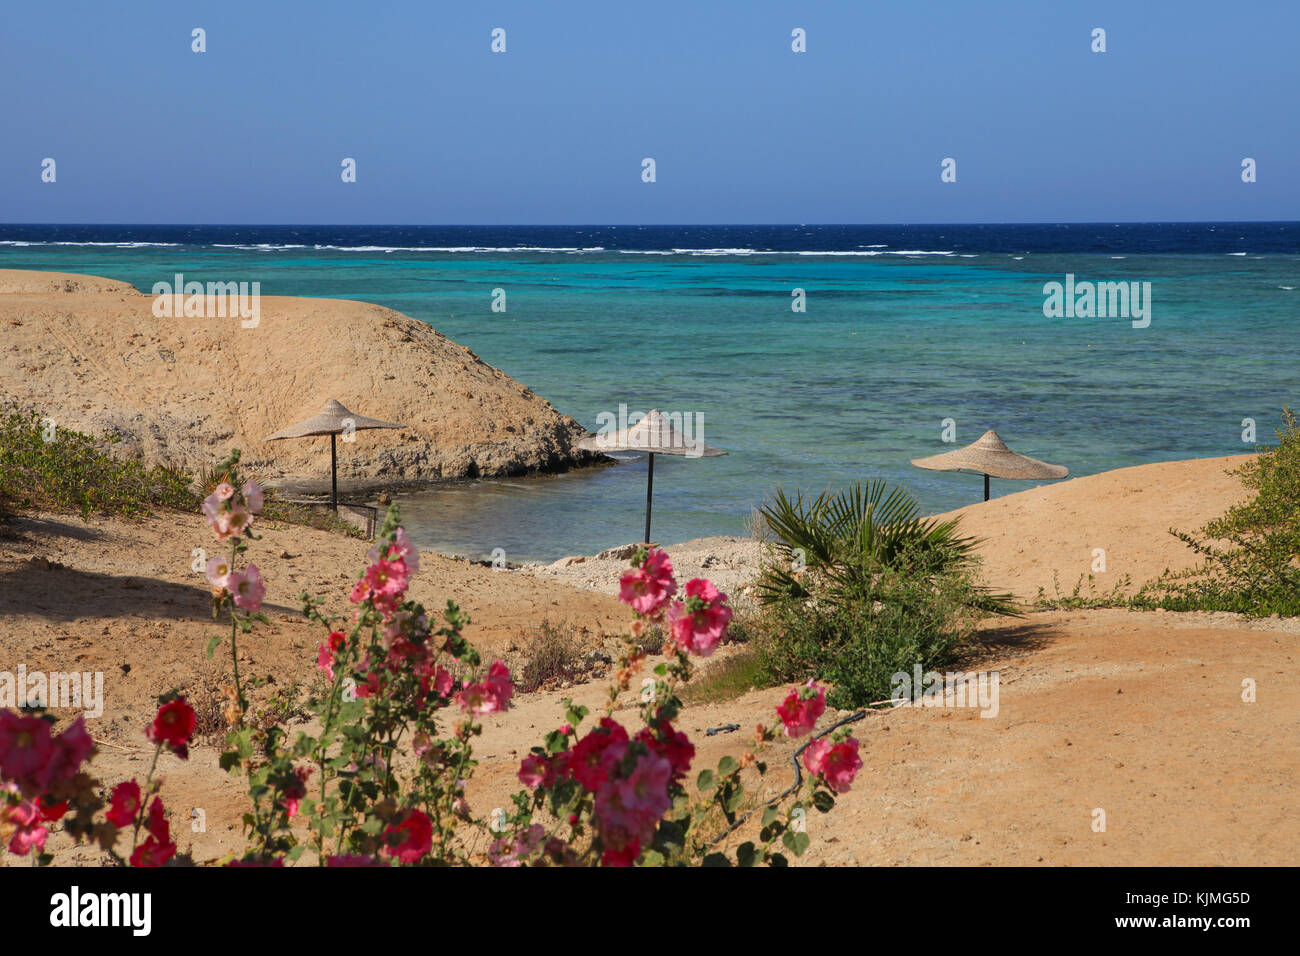 Paesaggio marino di Marsa Alam (Mar Rosso), Egitto Foto Stock